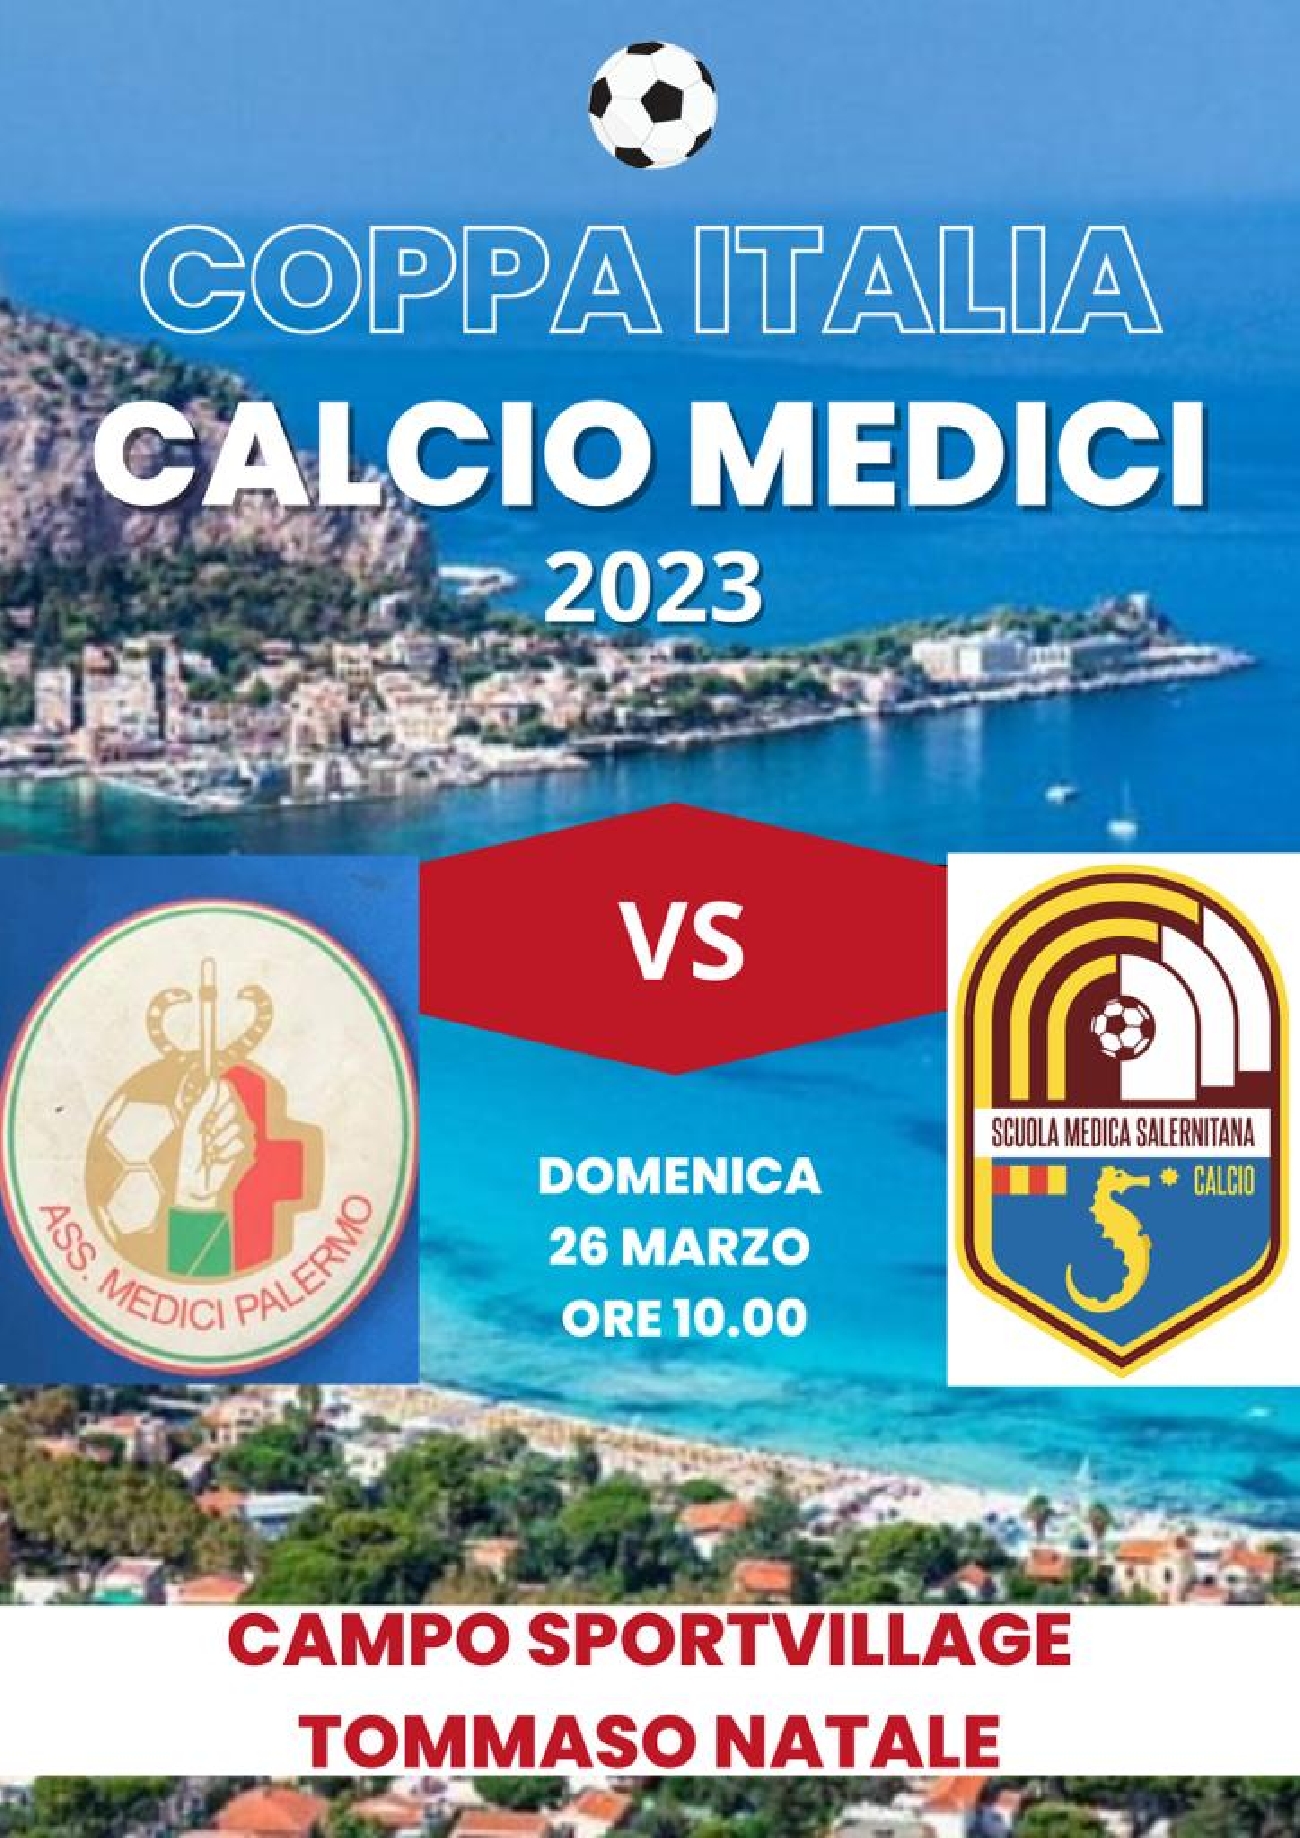 COPPA ITALIA MEDICI 2023, la sfida Palermo-Salerno 